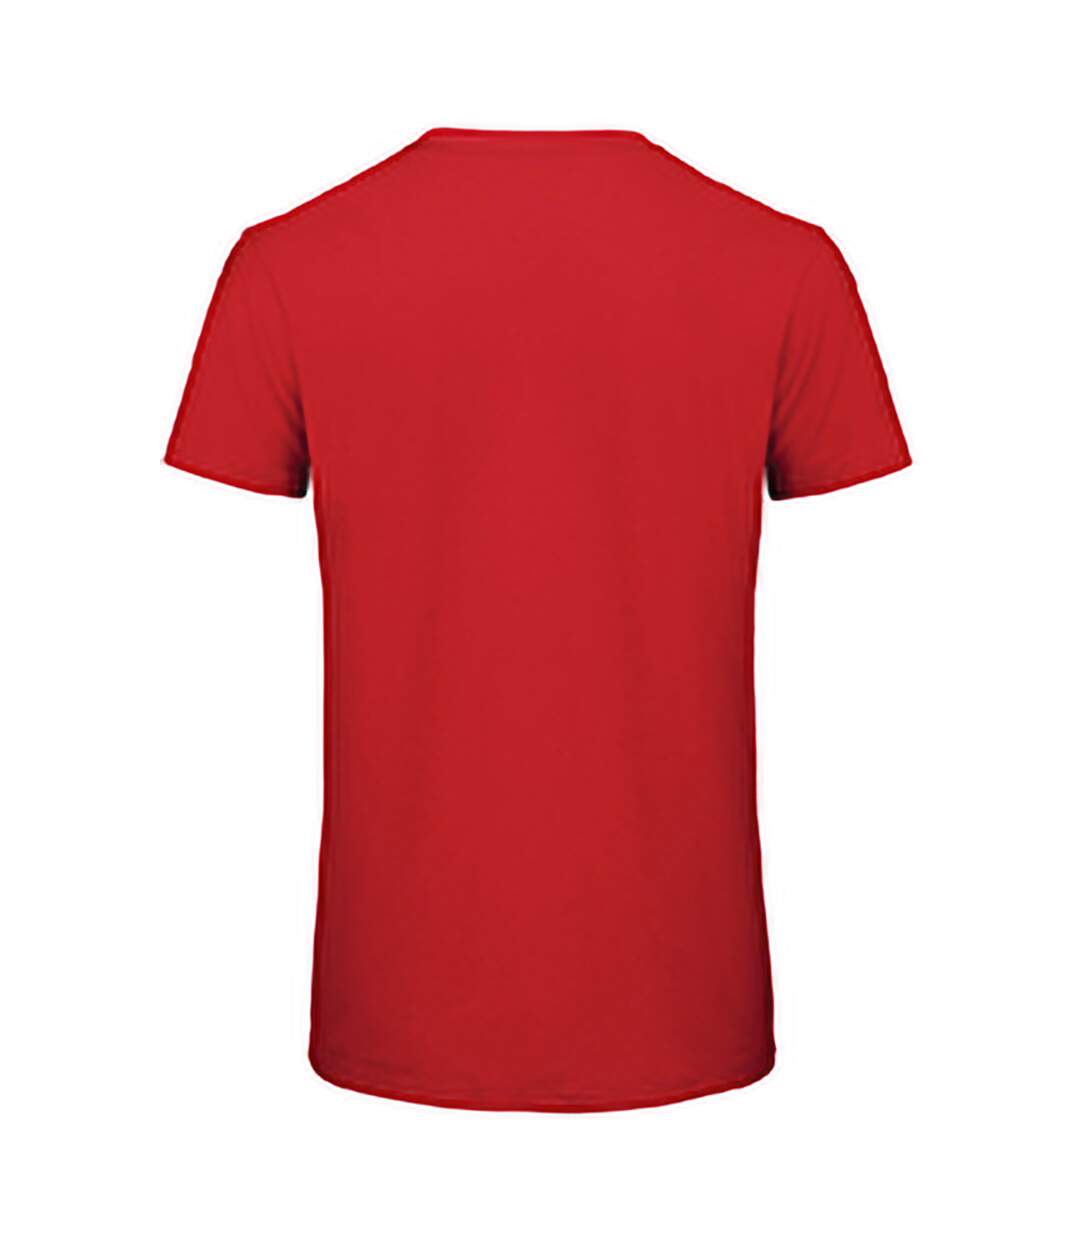 B&C Favourite - T-shirt en coton bio - Homme (Rouge) - UTBC3635